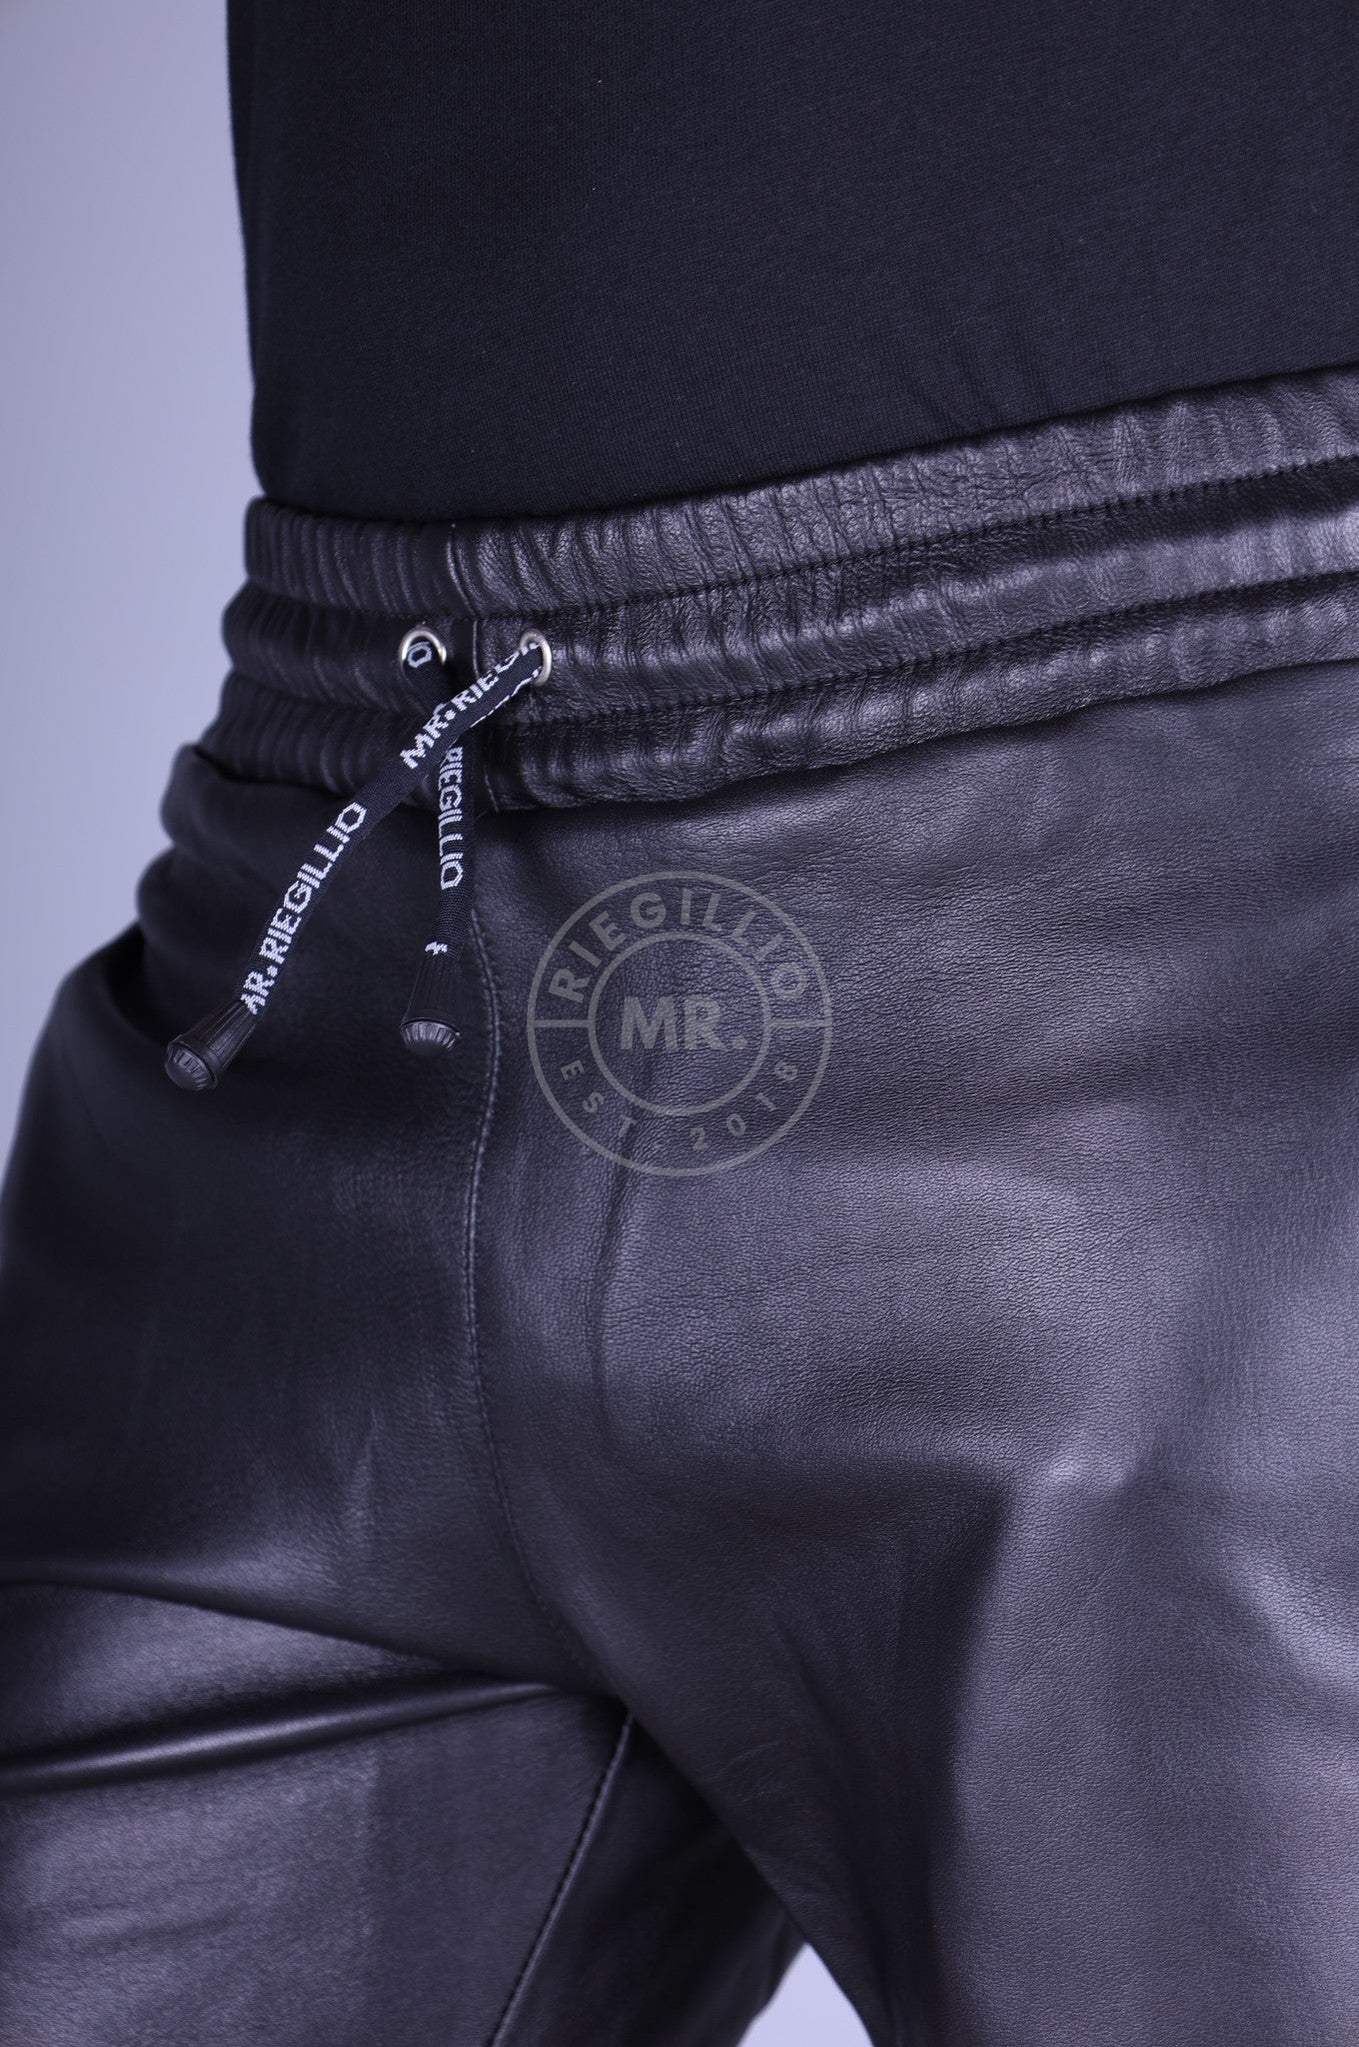 Schwarze Riegillio von MR. 5 Lederhose Pocket